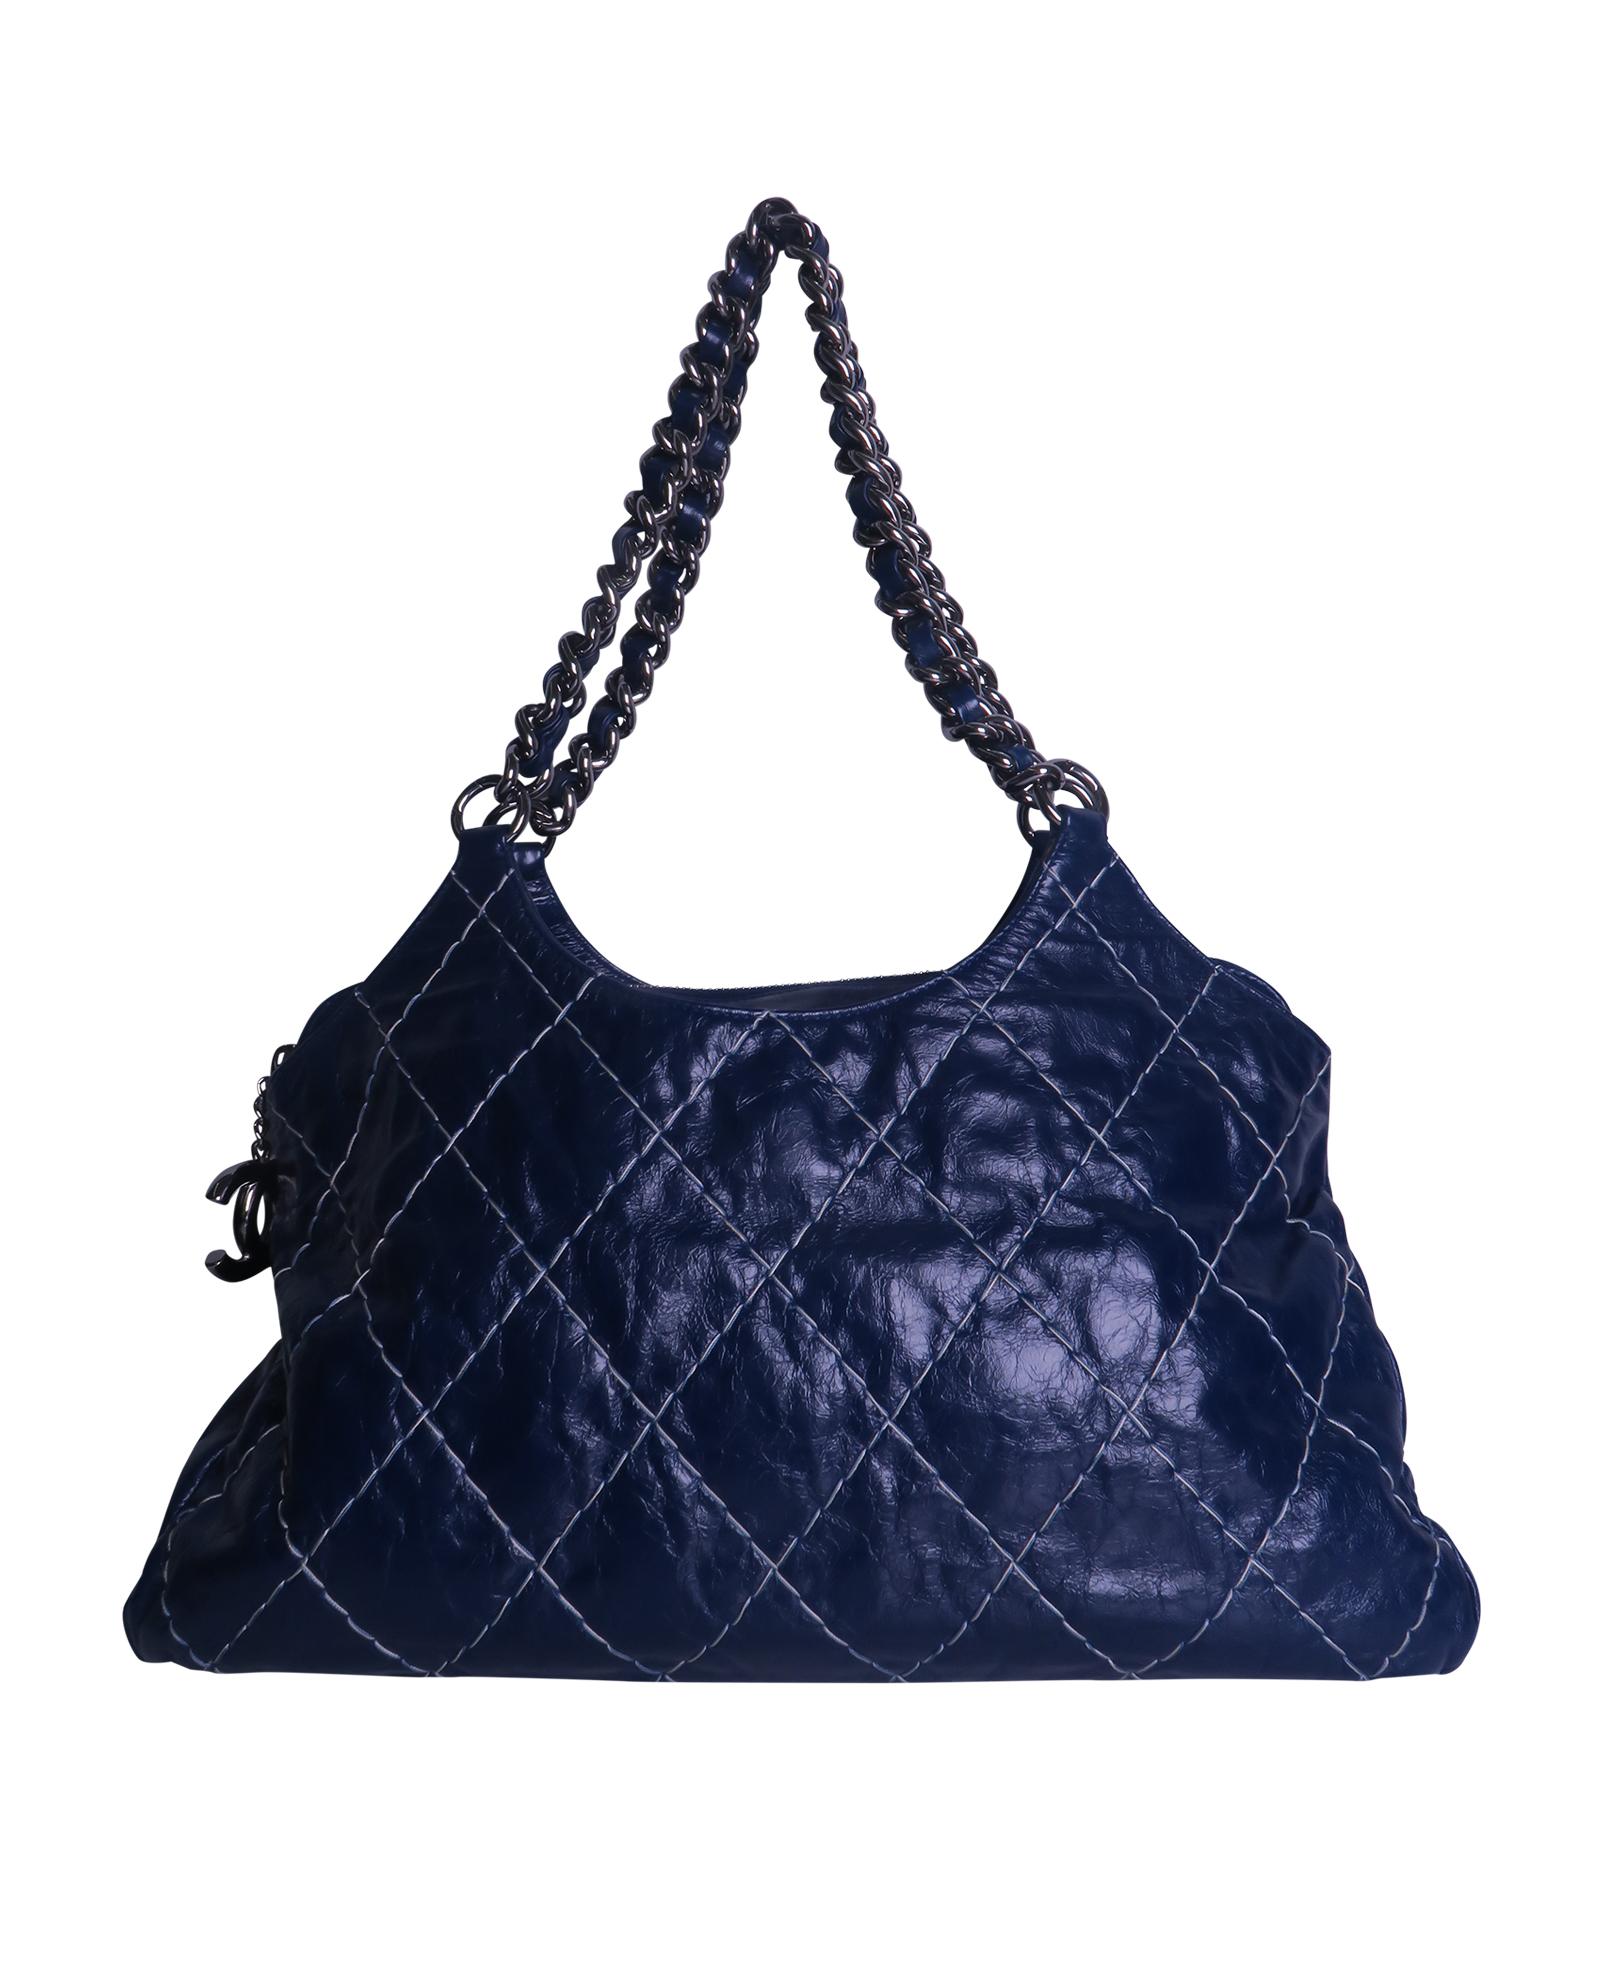 Wild Stitch Chain Tote Bag, Chanel - Designer Exchange